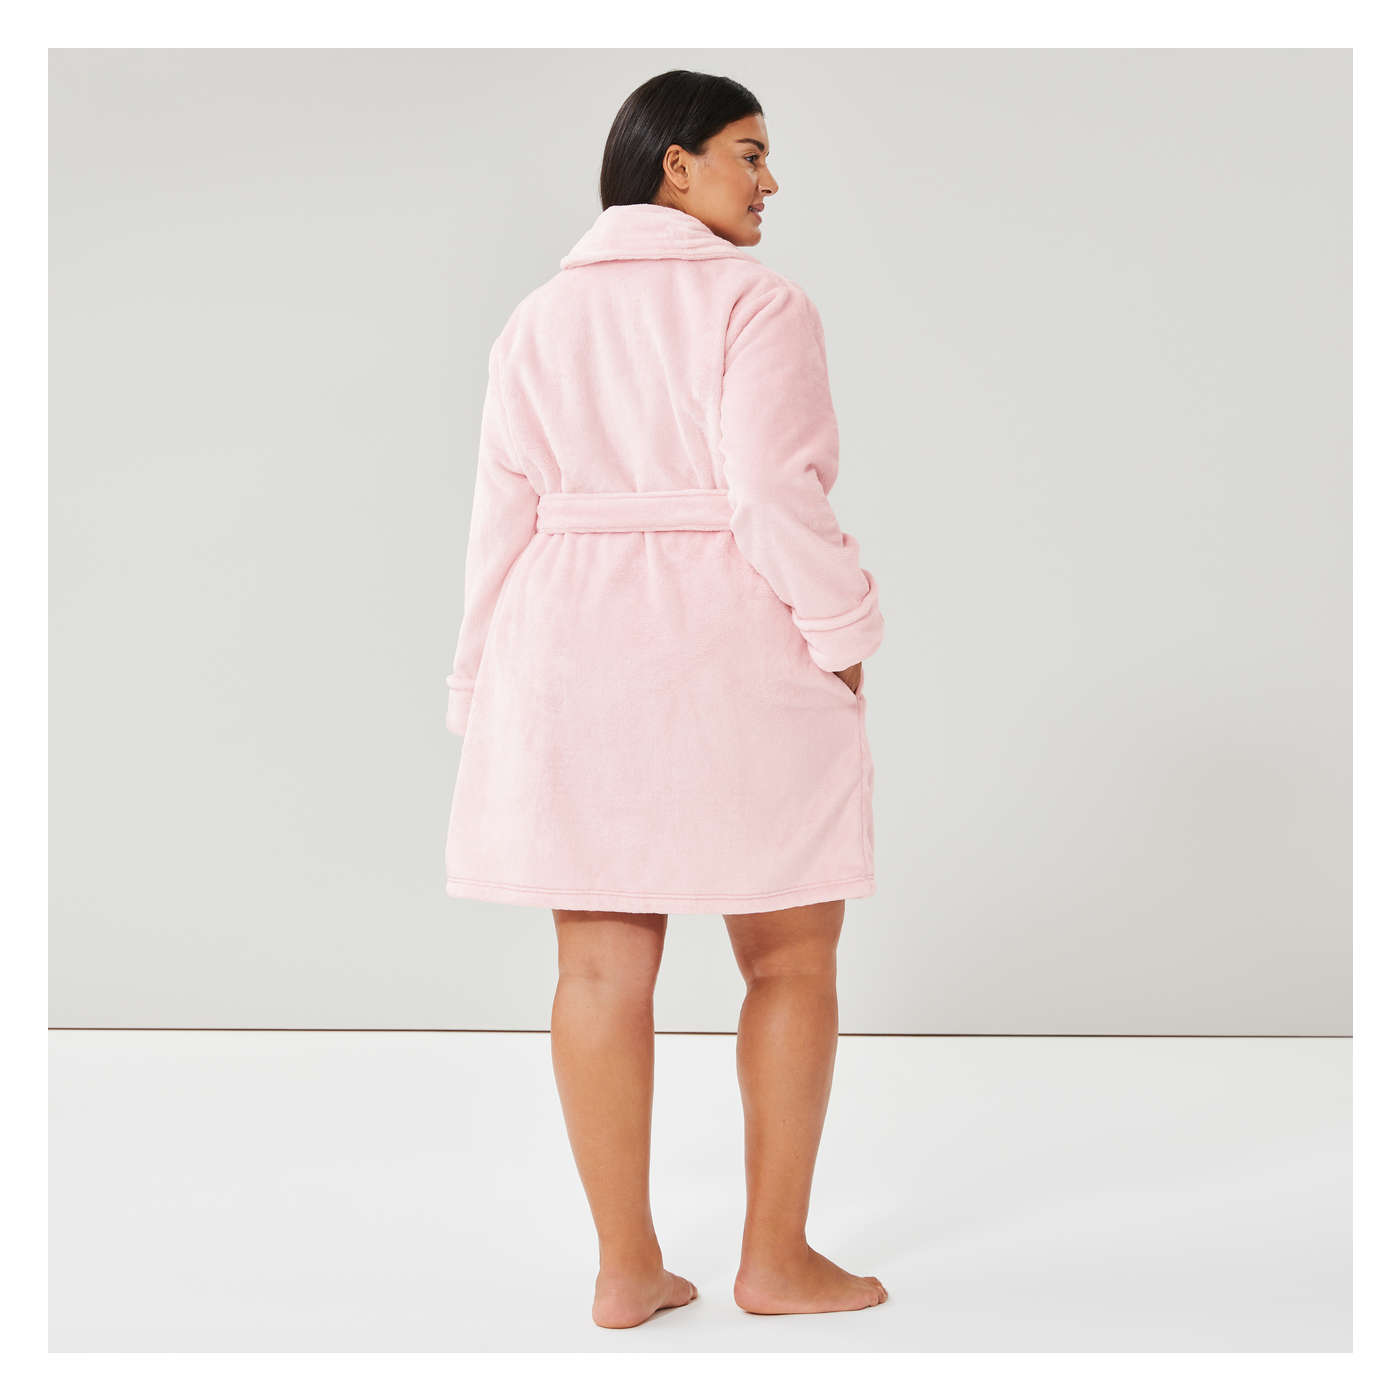 Fleece Robe in Light Pink from Joe Fresh